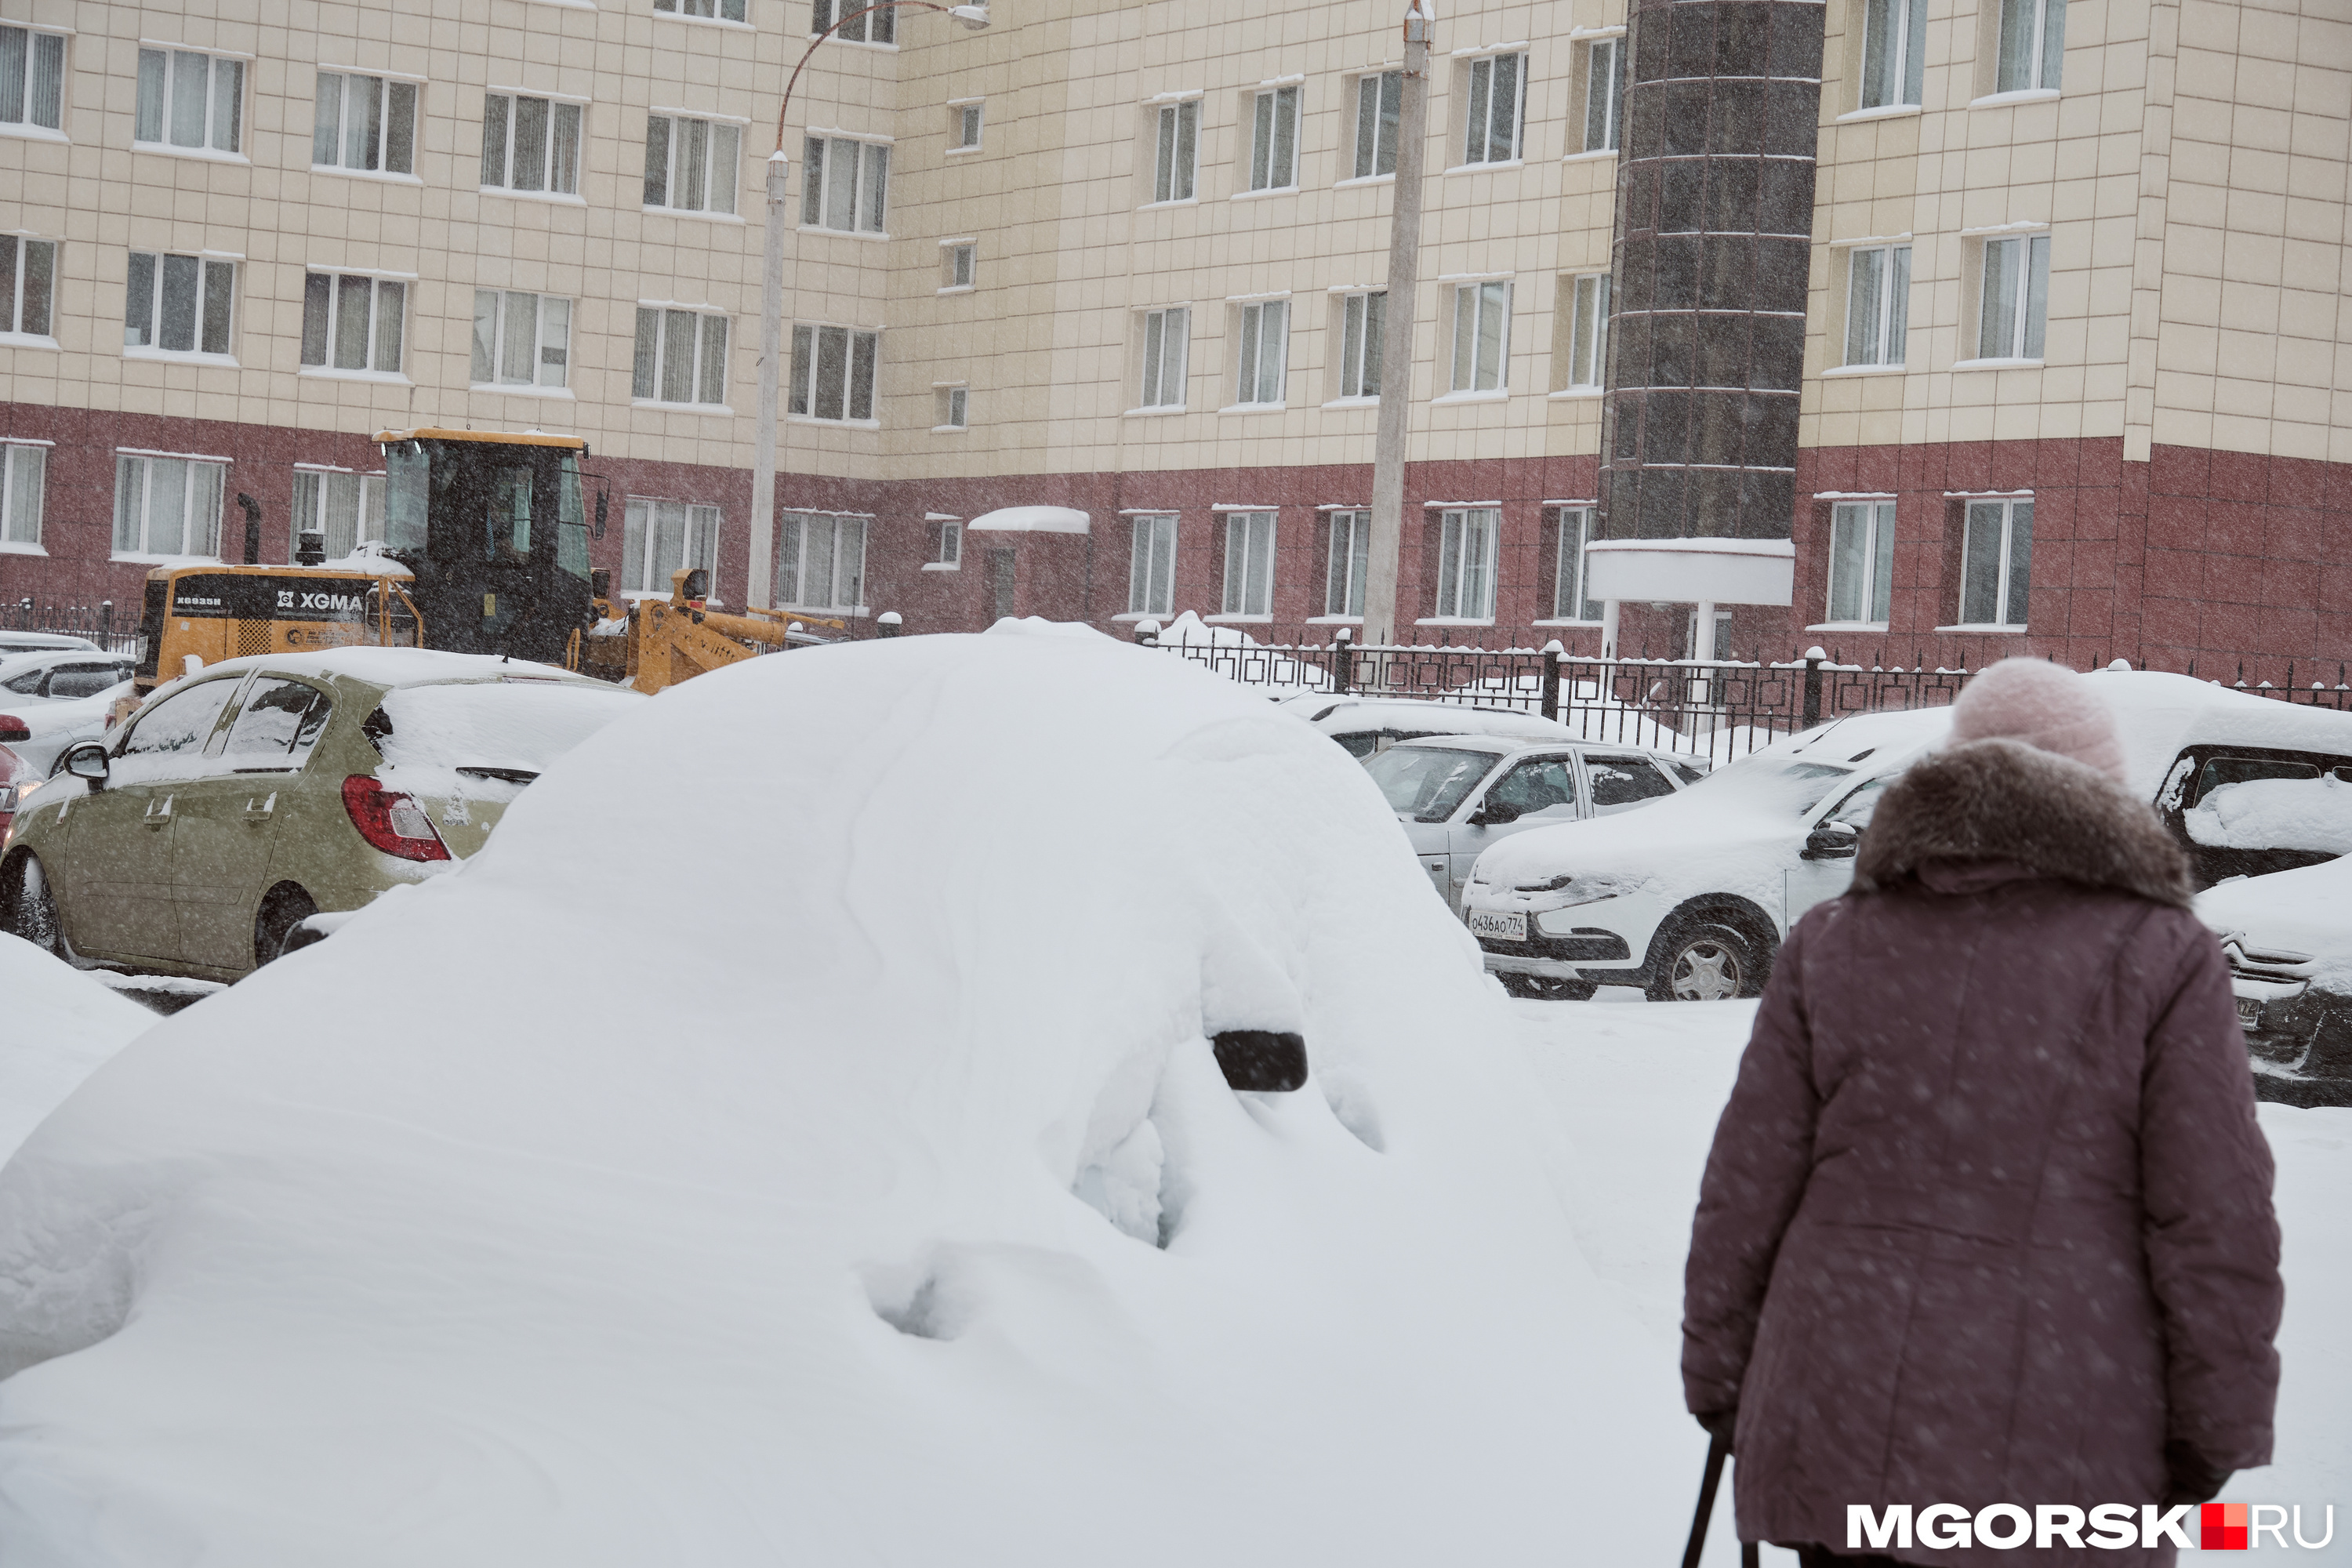 Жителей просят не оставлять машины на парковках, обочинах и внутри кварталов, чтобы техника могла спокойно убирать снег